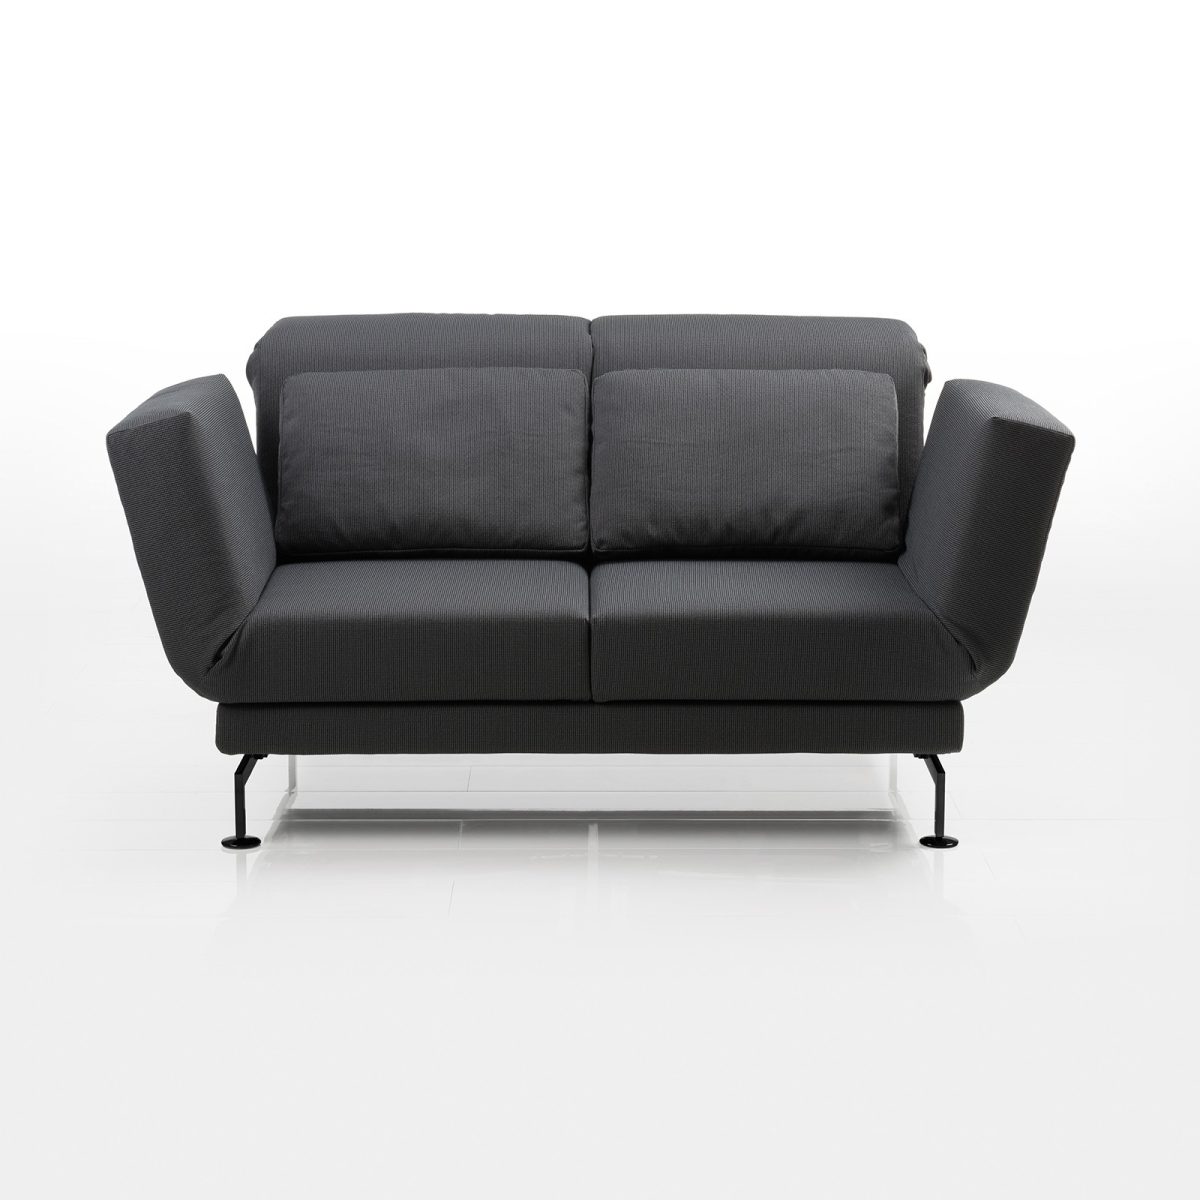 Brühl Moule Sofa online kaufen bei | wohnenschlafen-shop.de